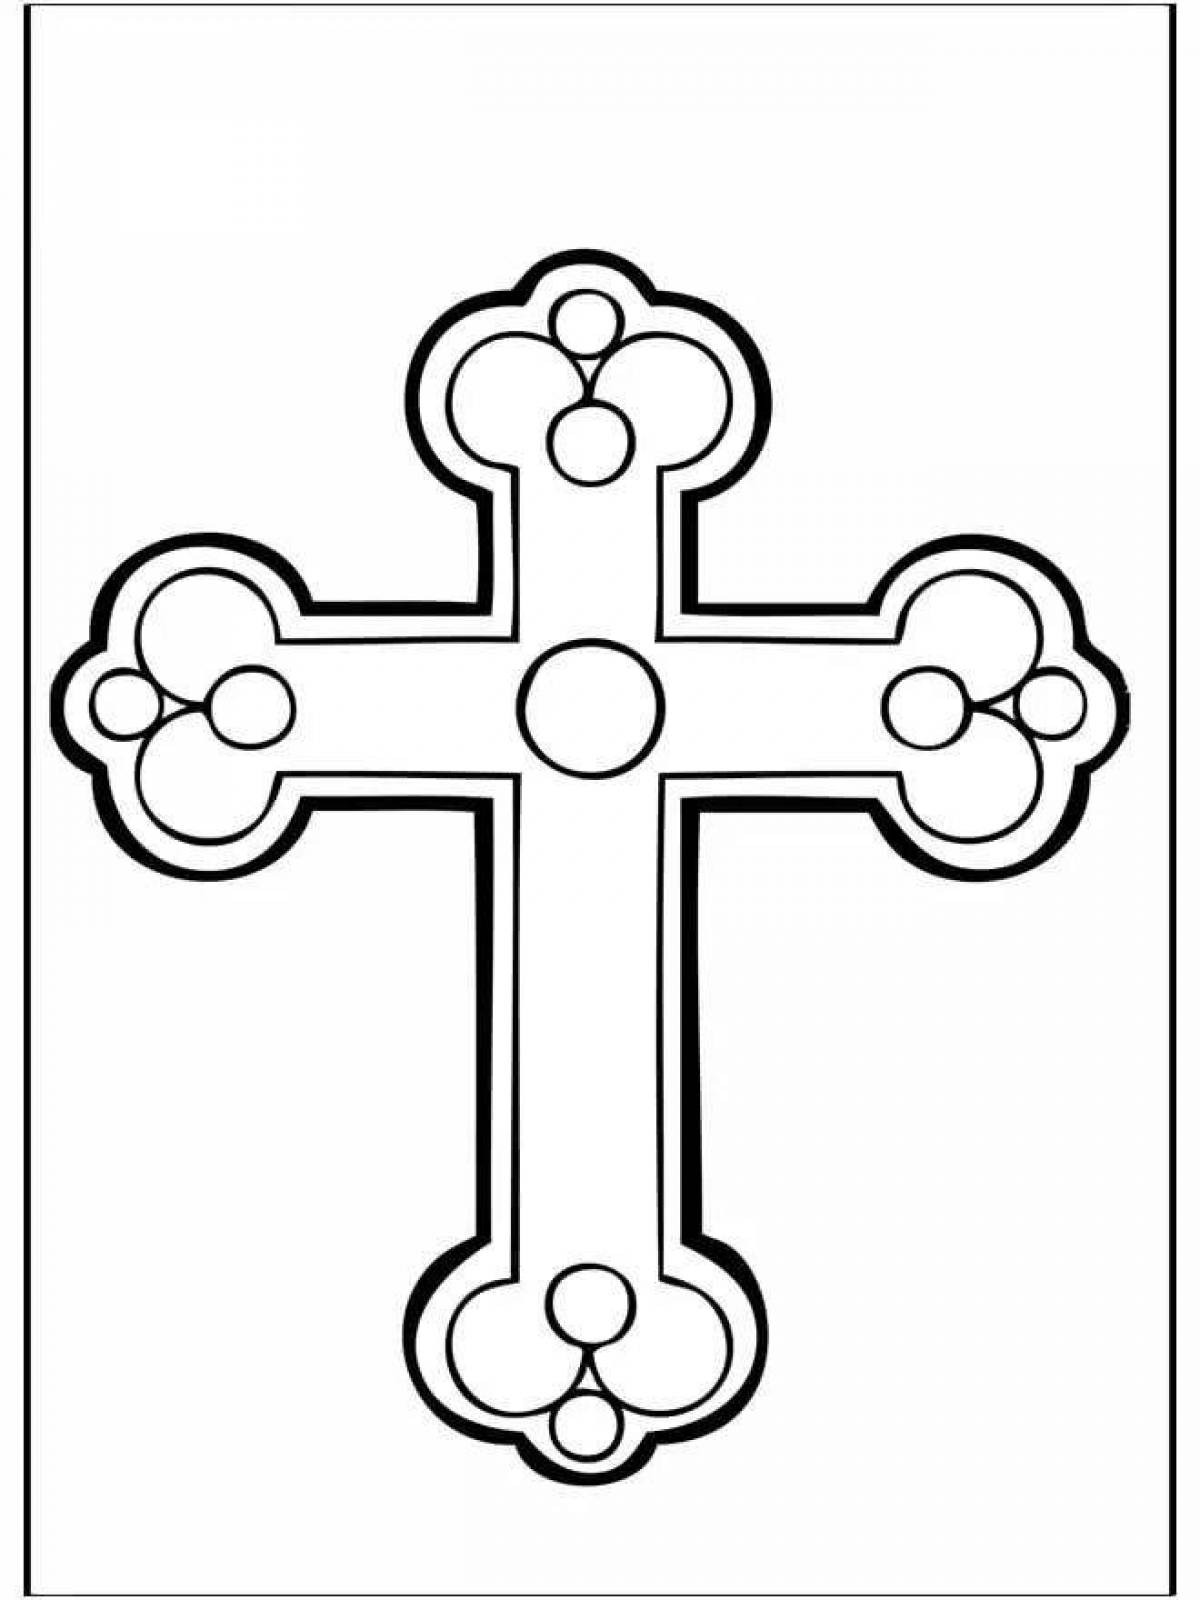 Joyful coloring cross